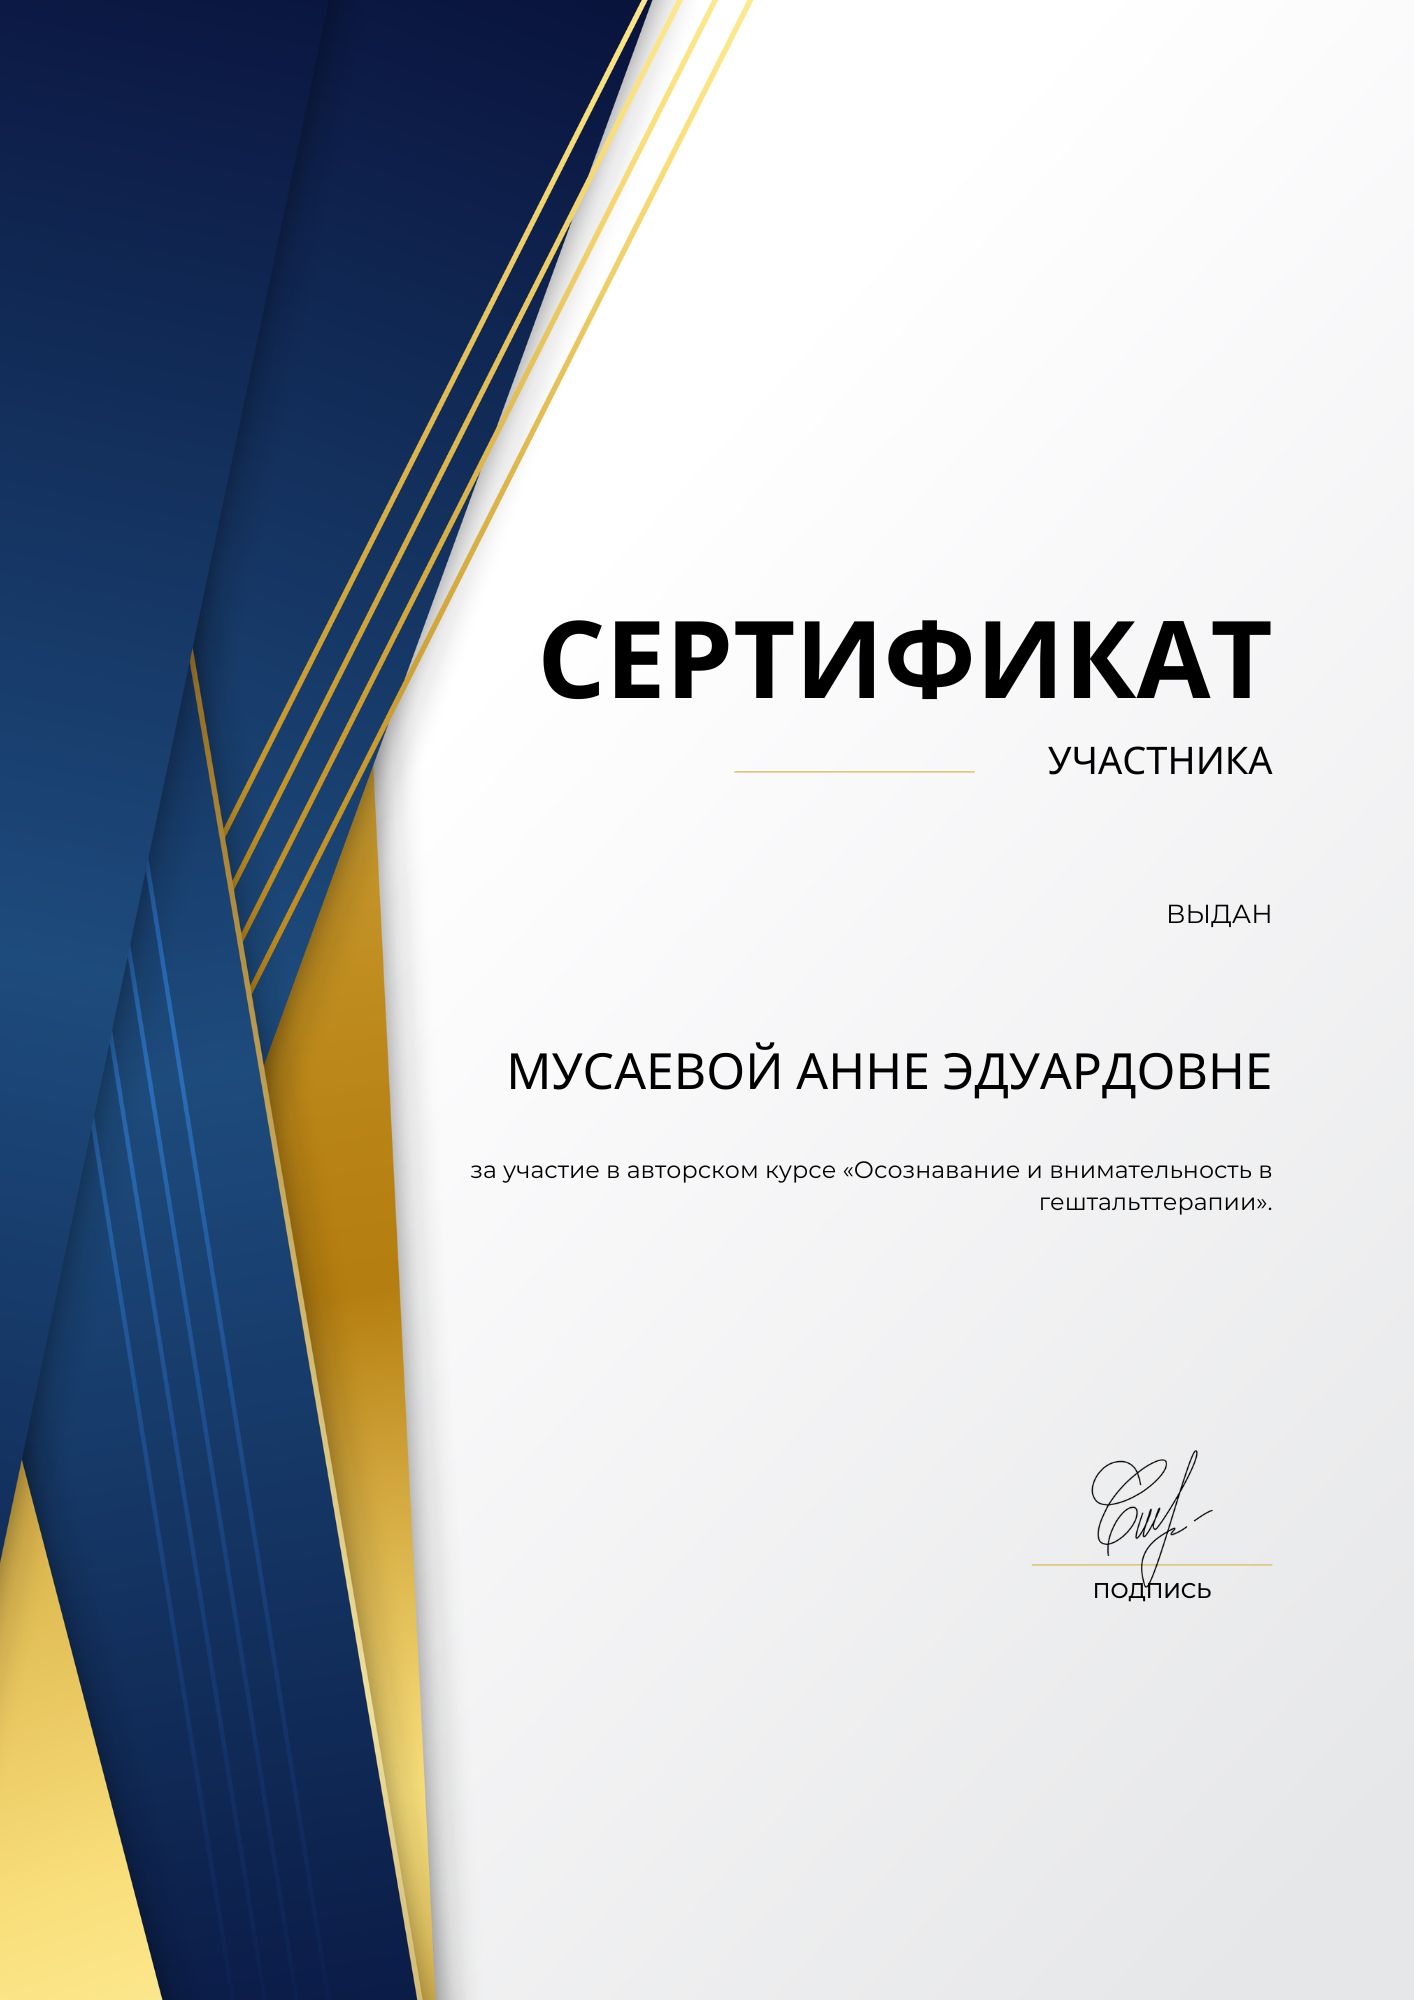 Фотография сертификата Мусаевой Анны Эдуардовны за участие в авторском курсе